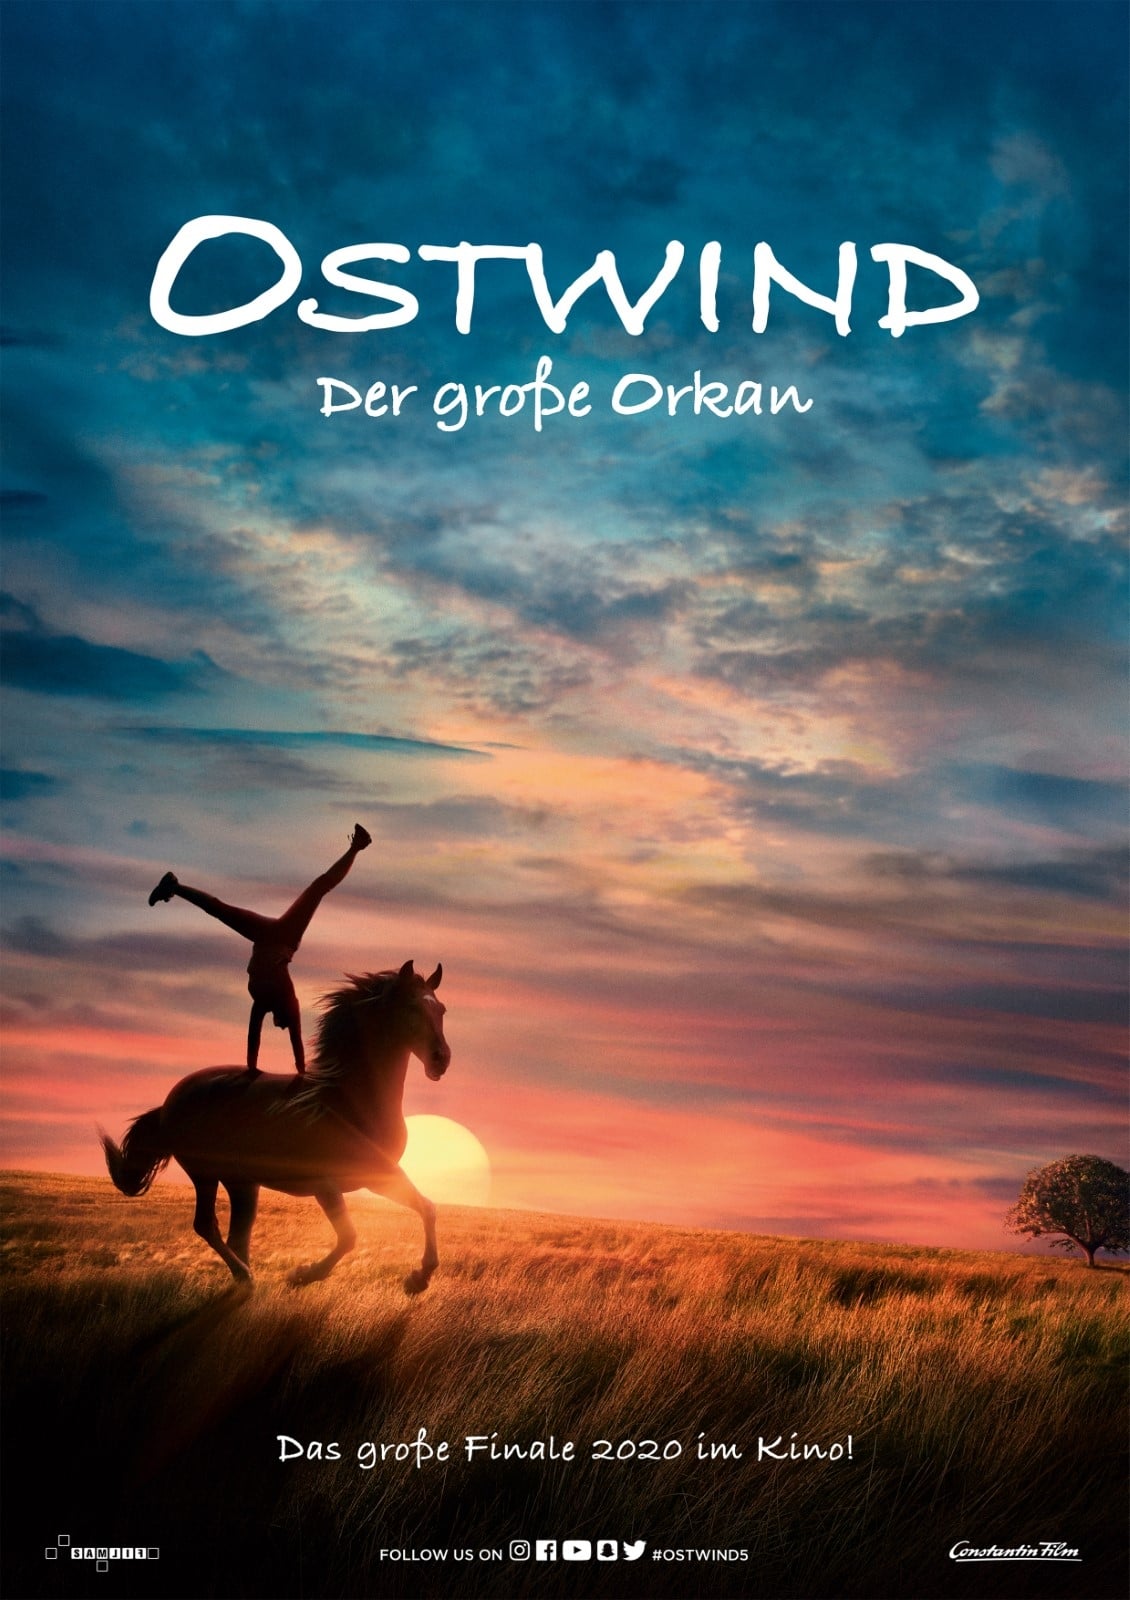 Ostwind 6 release date